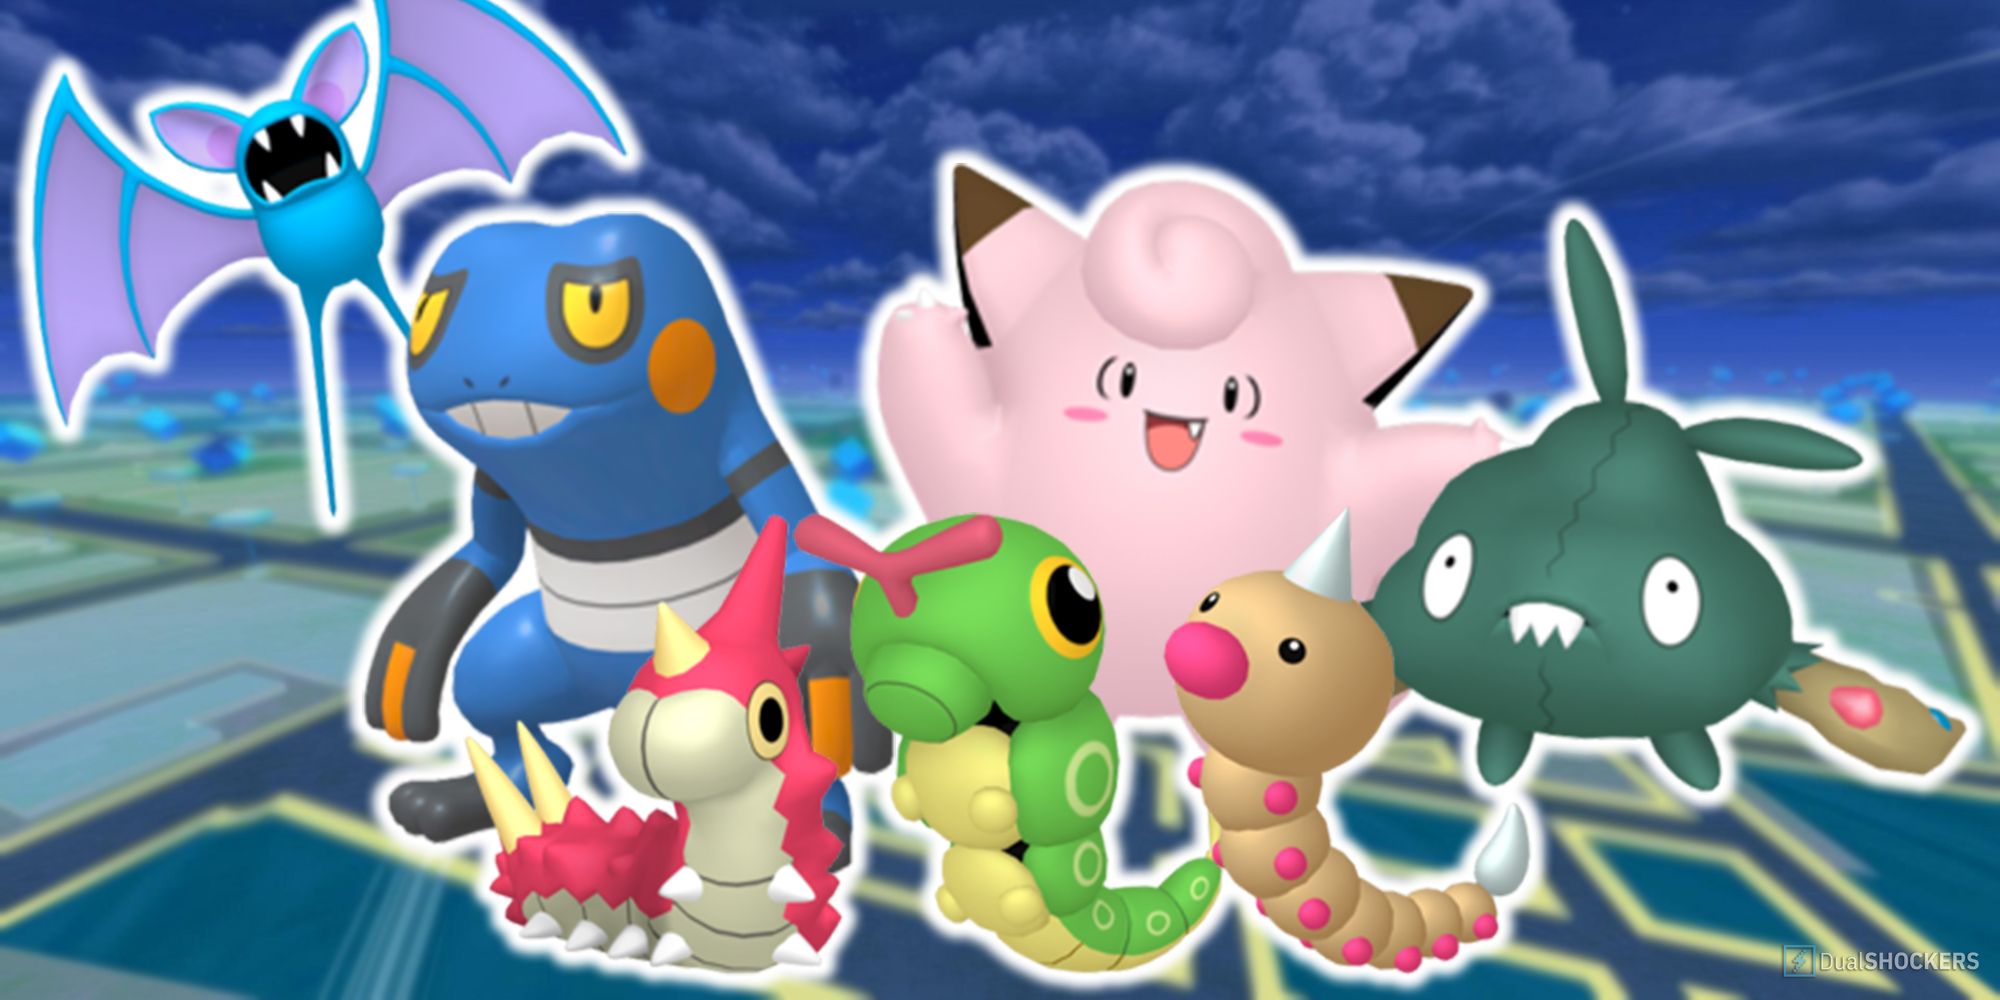 Zubat, Clefairy, Croagunk, Caterpie, Weedle, Wurmple, and Trubbish in Pokemon GO.